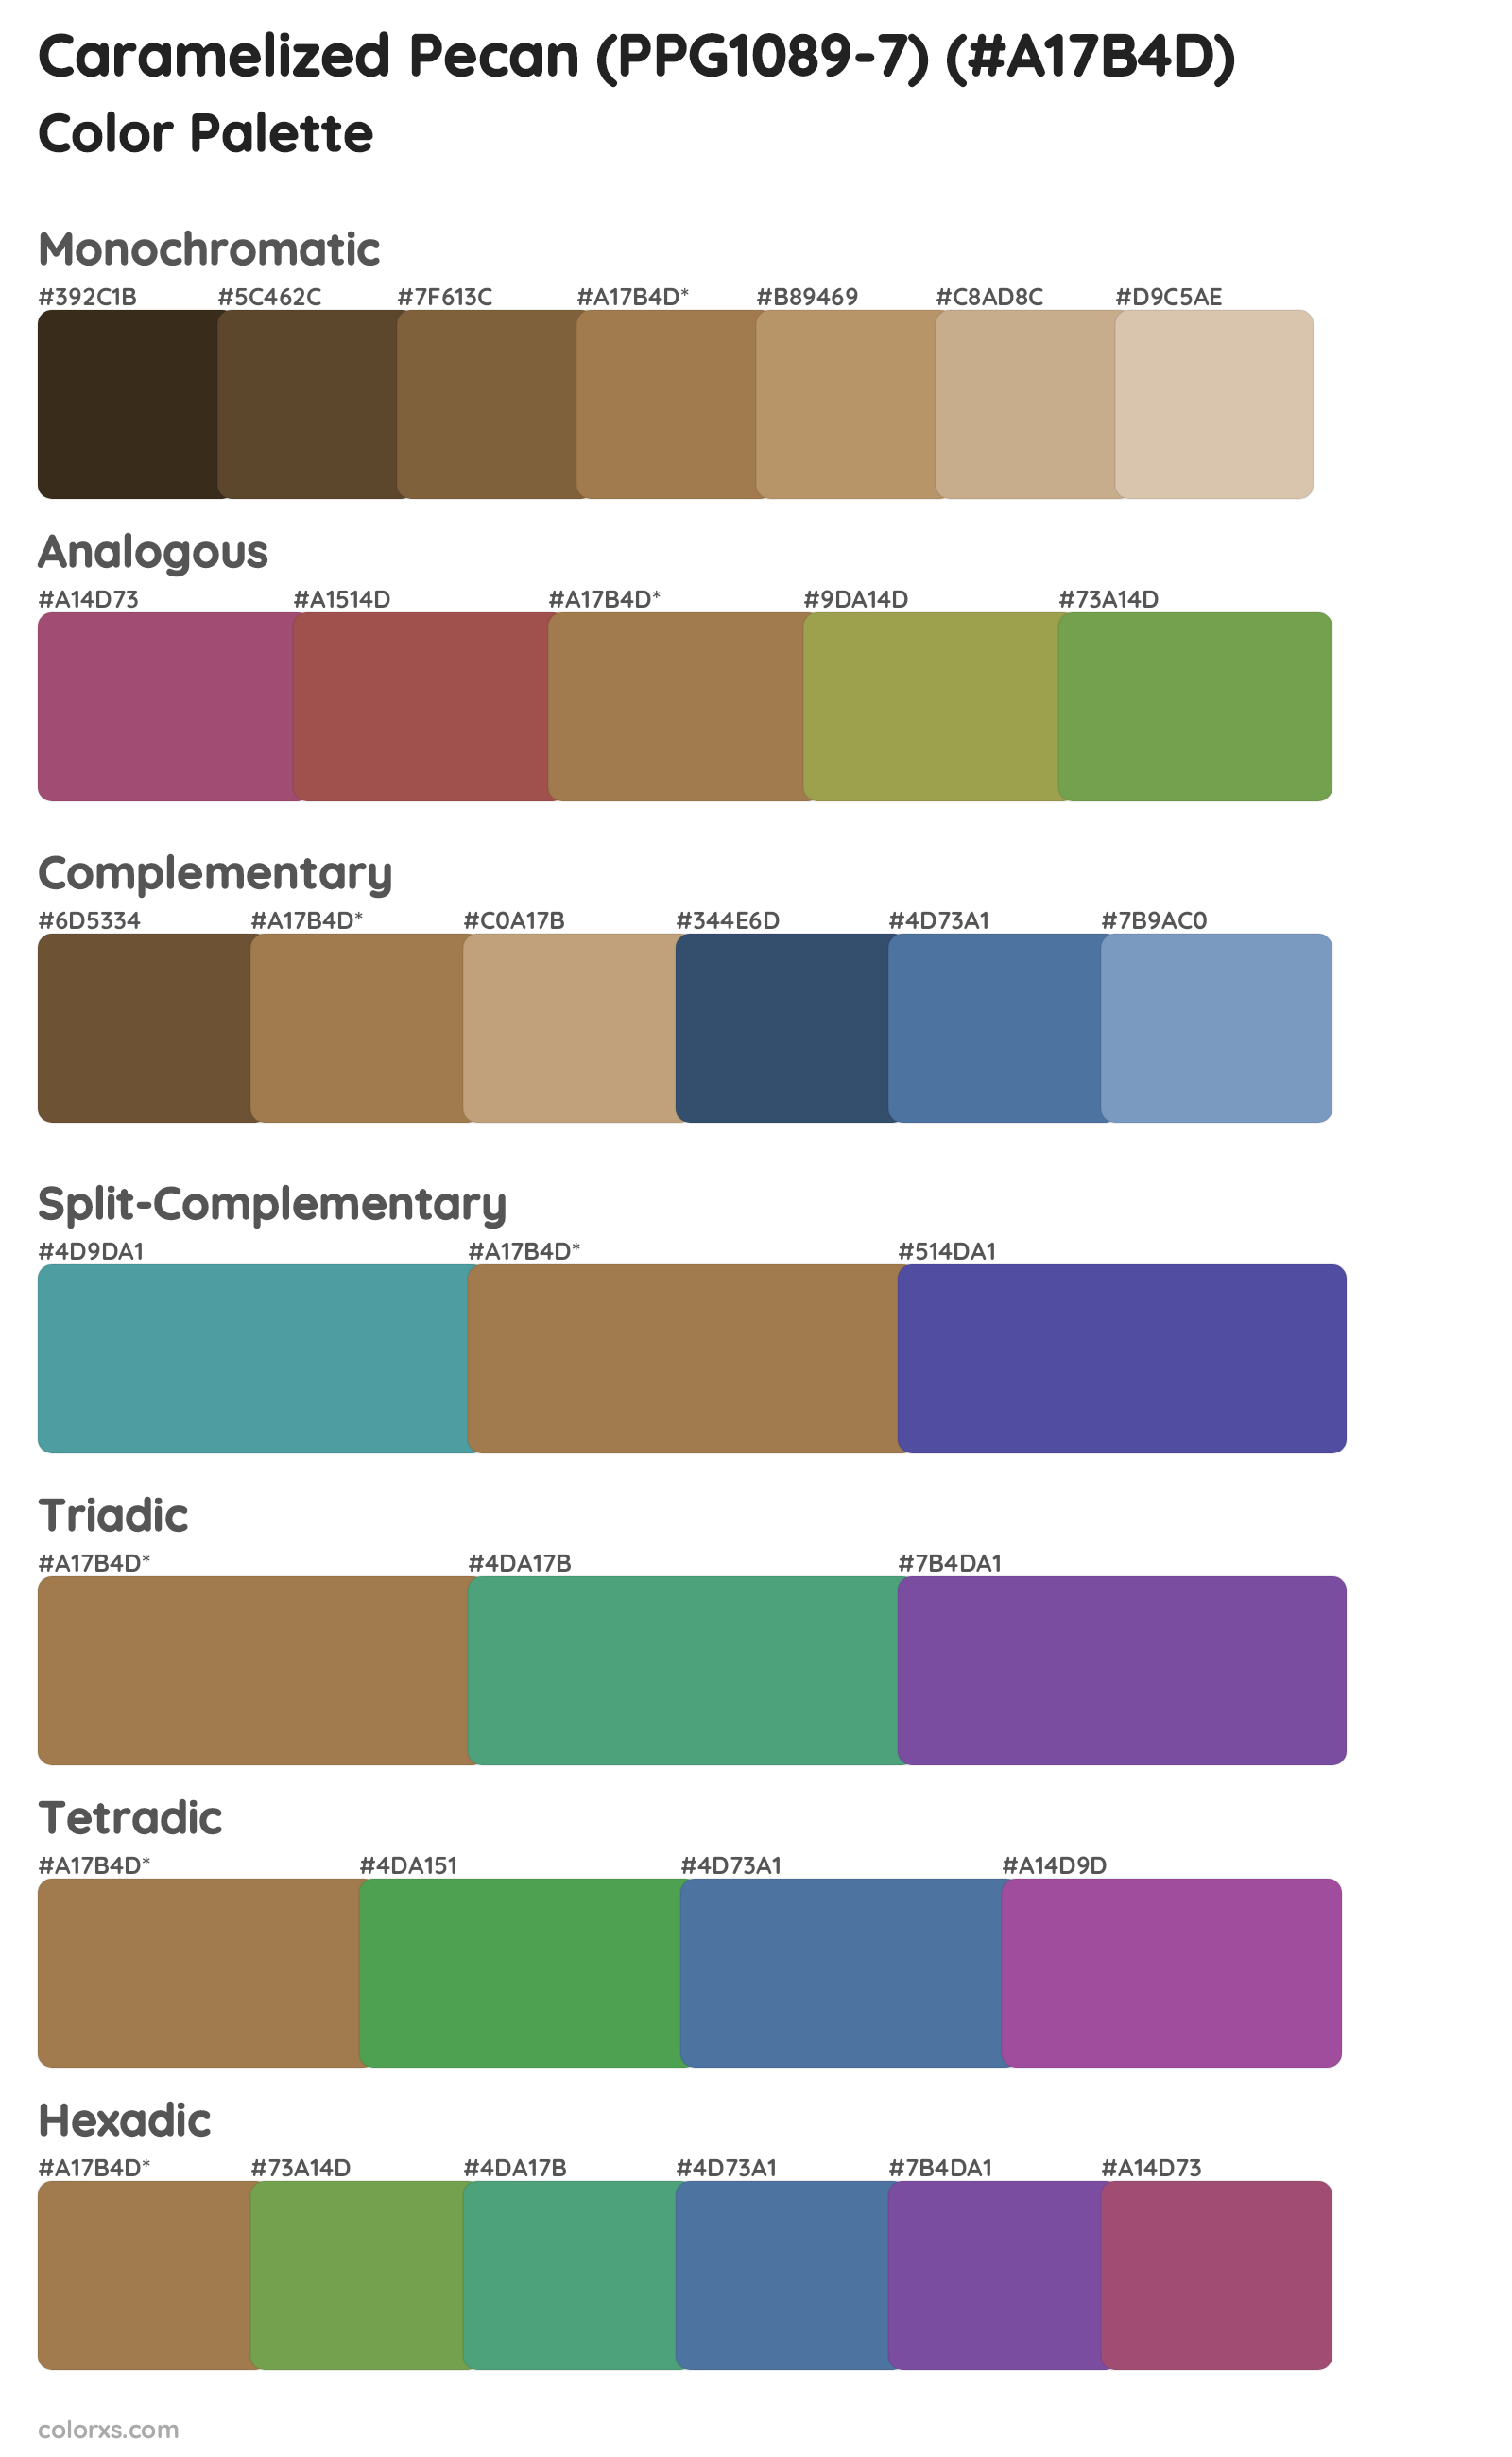 Caramelized Pecan (PPG1089-7) Color Scheme Palettes